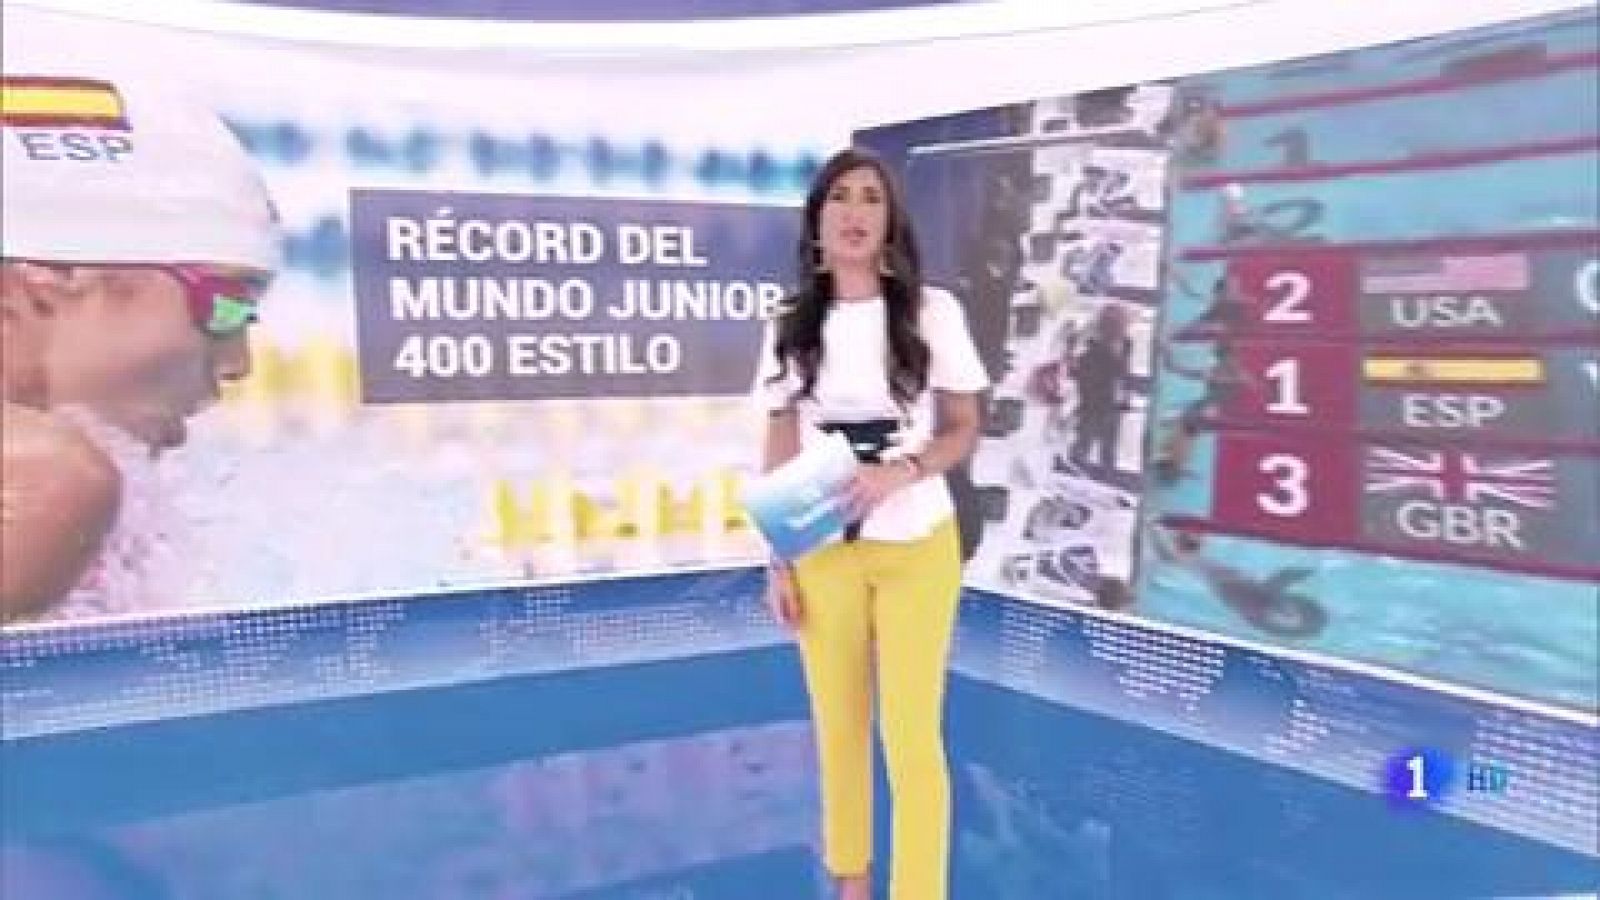 Natación: Alba Vázquez, récord del mundo junior de 400 estilos - rtve.es